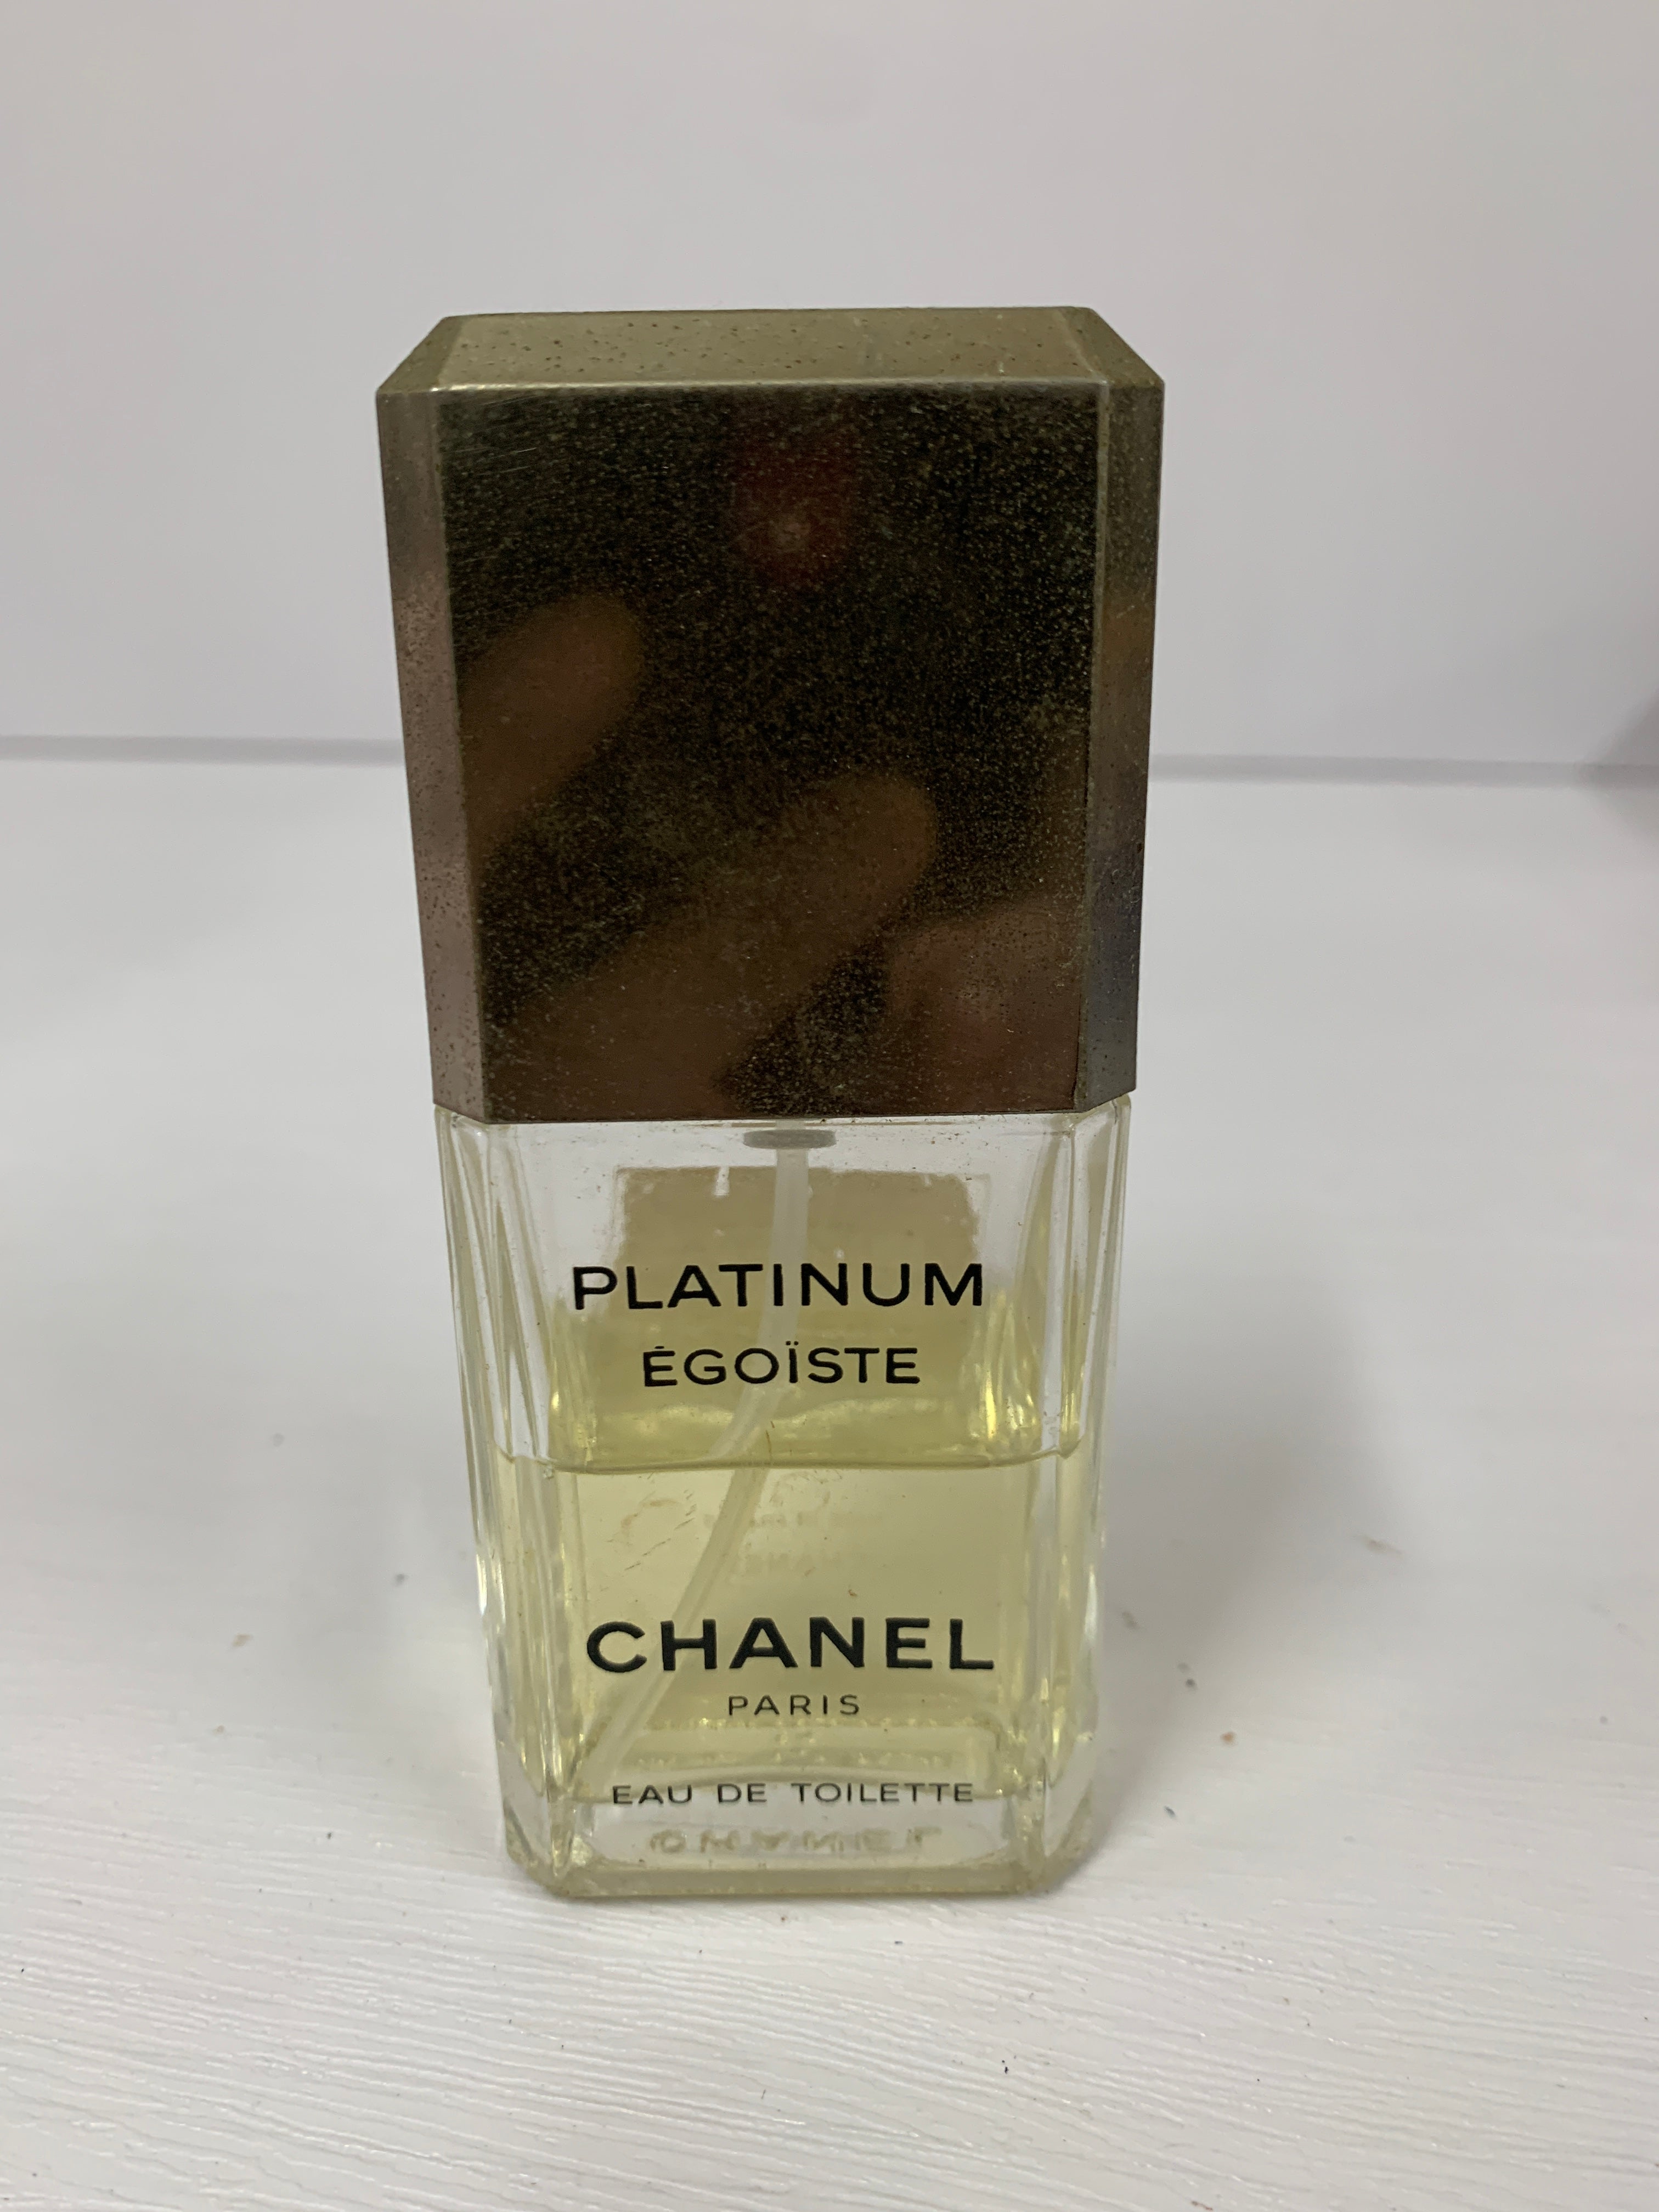 Chanel Platinum Egoiste Pour Homme Eau De Toilette Spray, 49% OFF